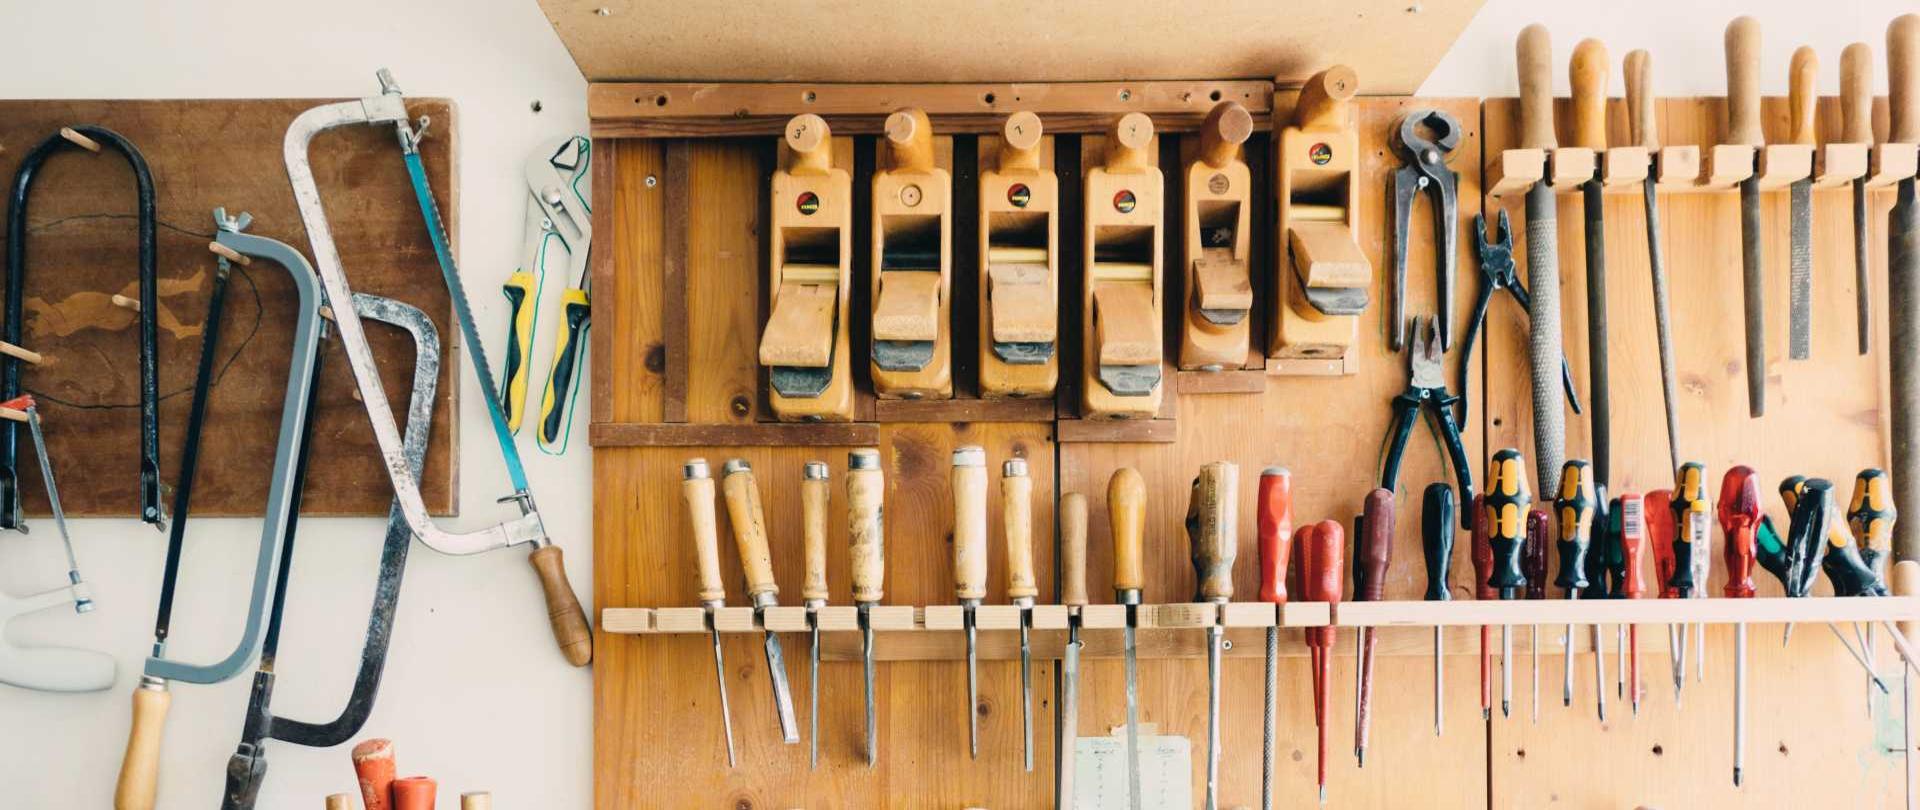 narzędzia stolarskie wiszą na drewnianych półkach